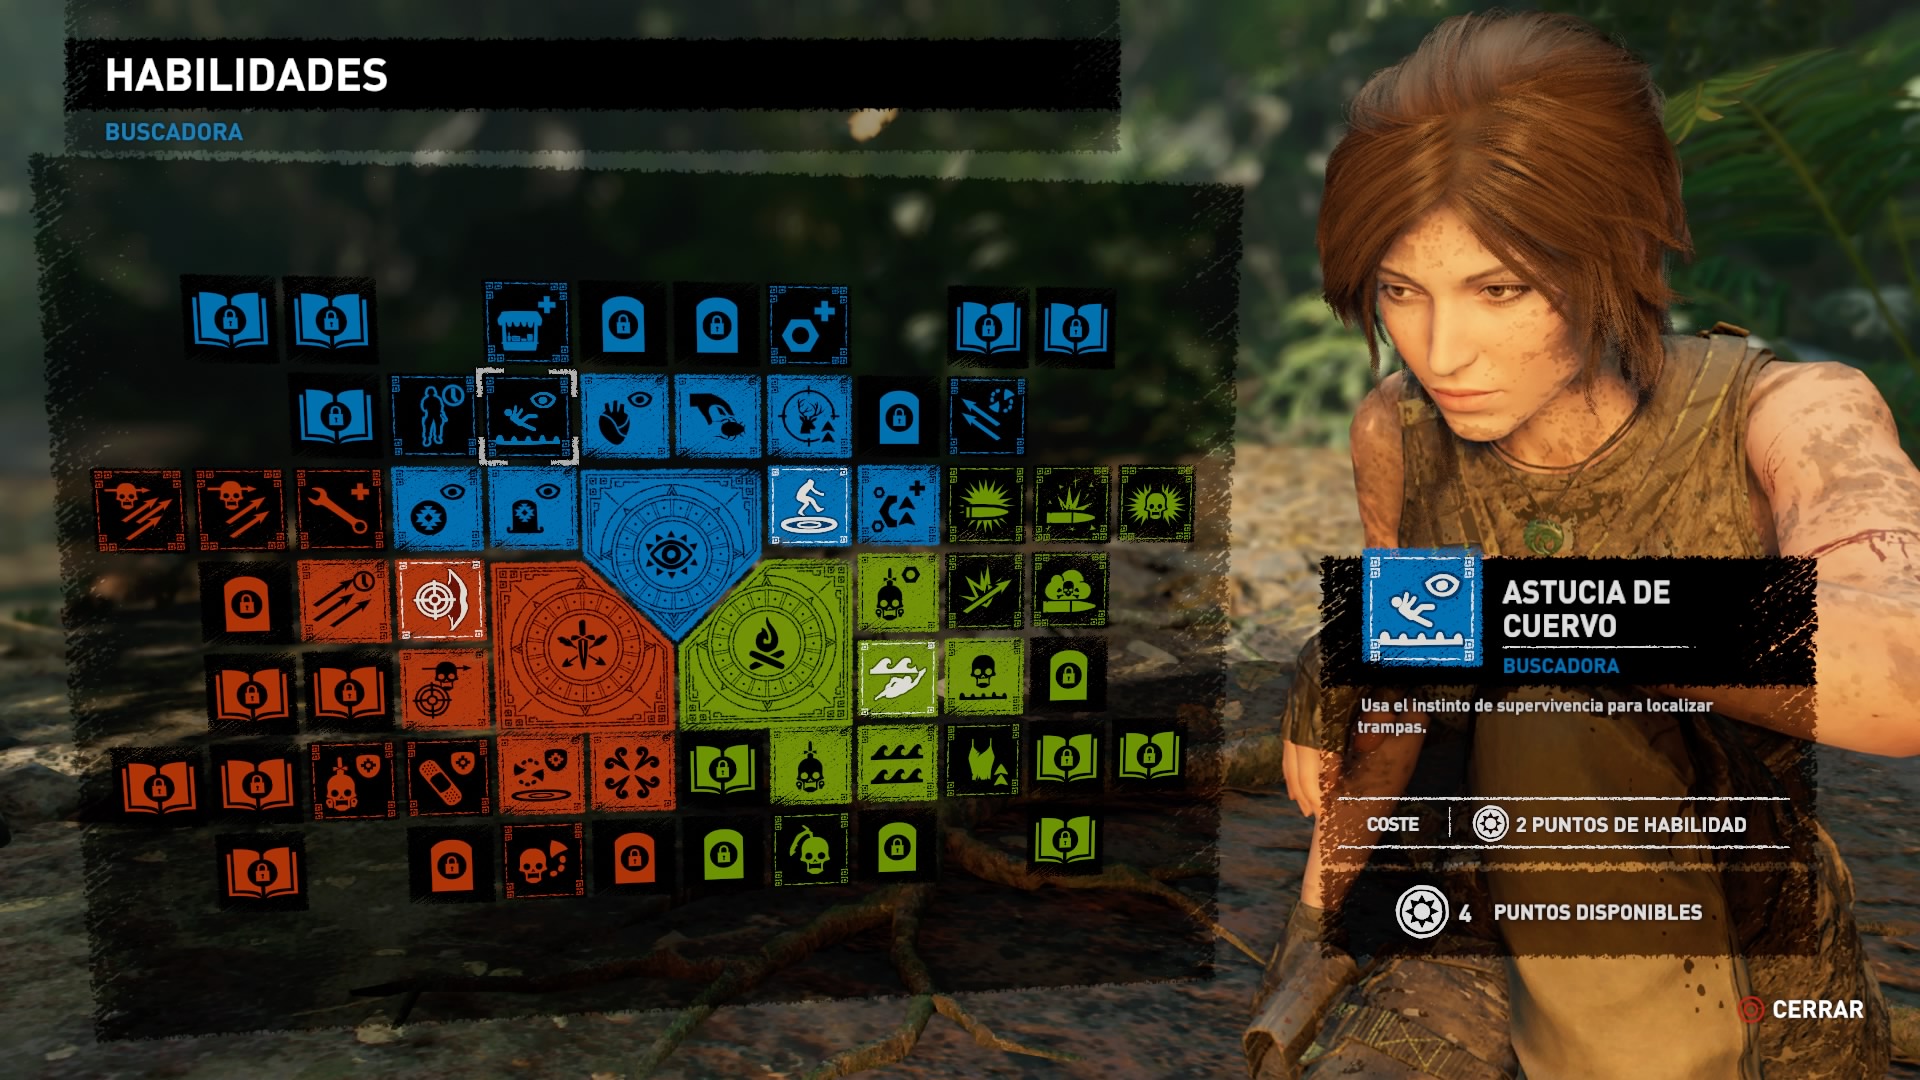 El conjunto de habilidades que podemos mejorar con Lara